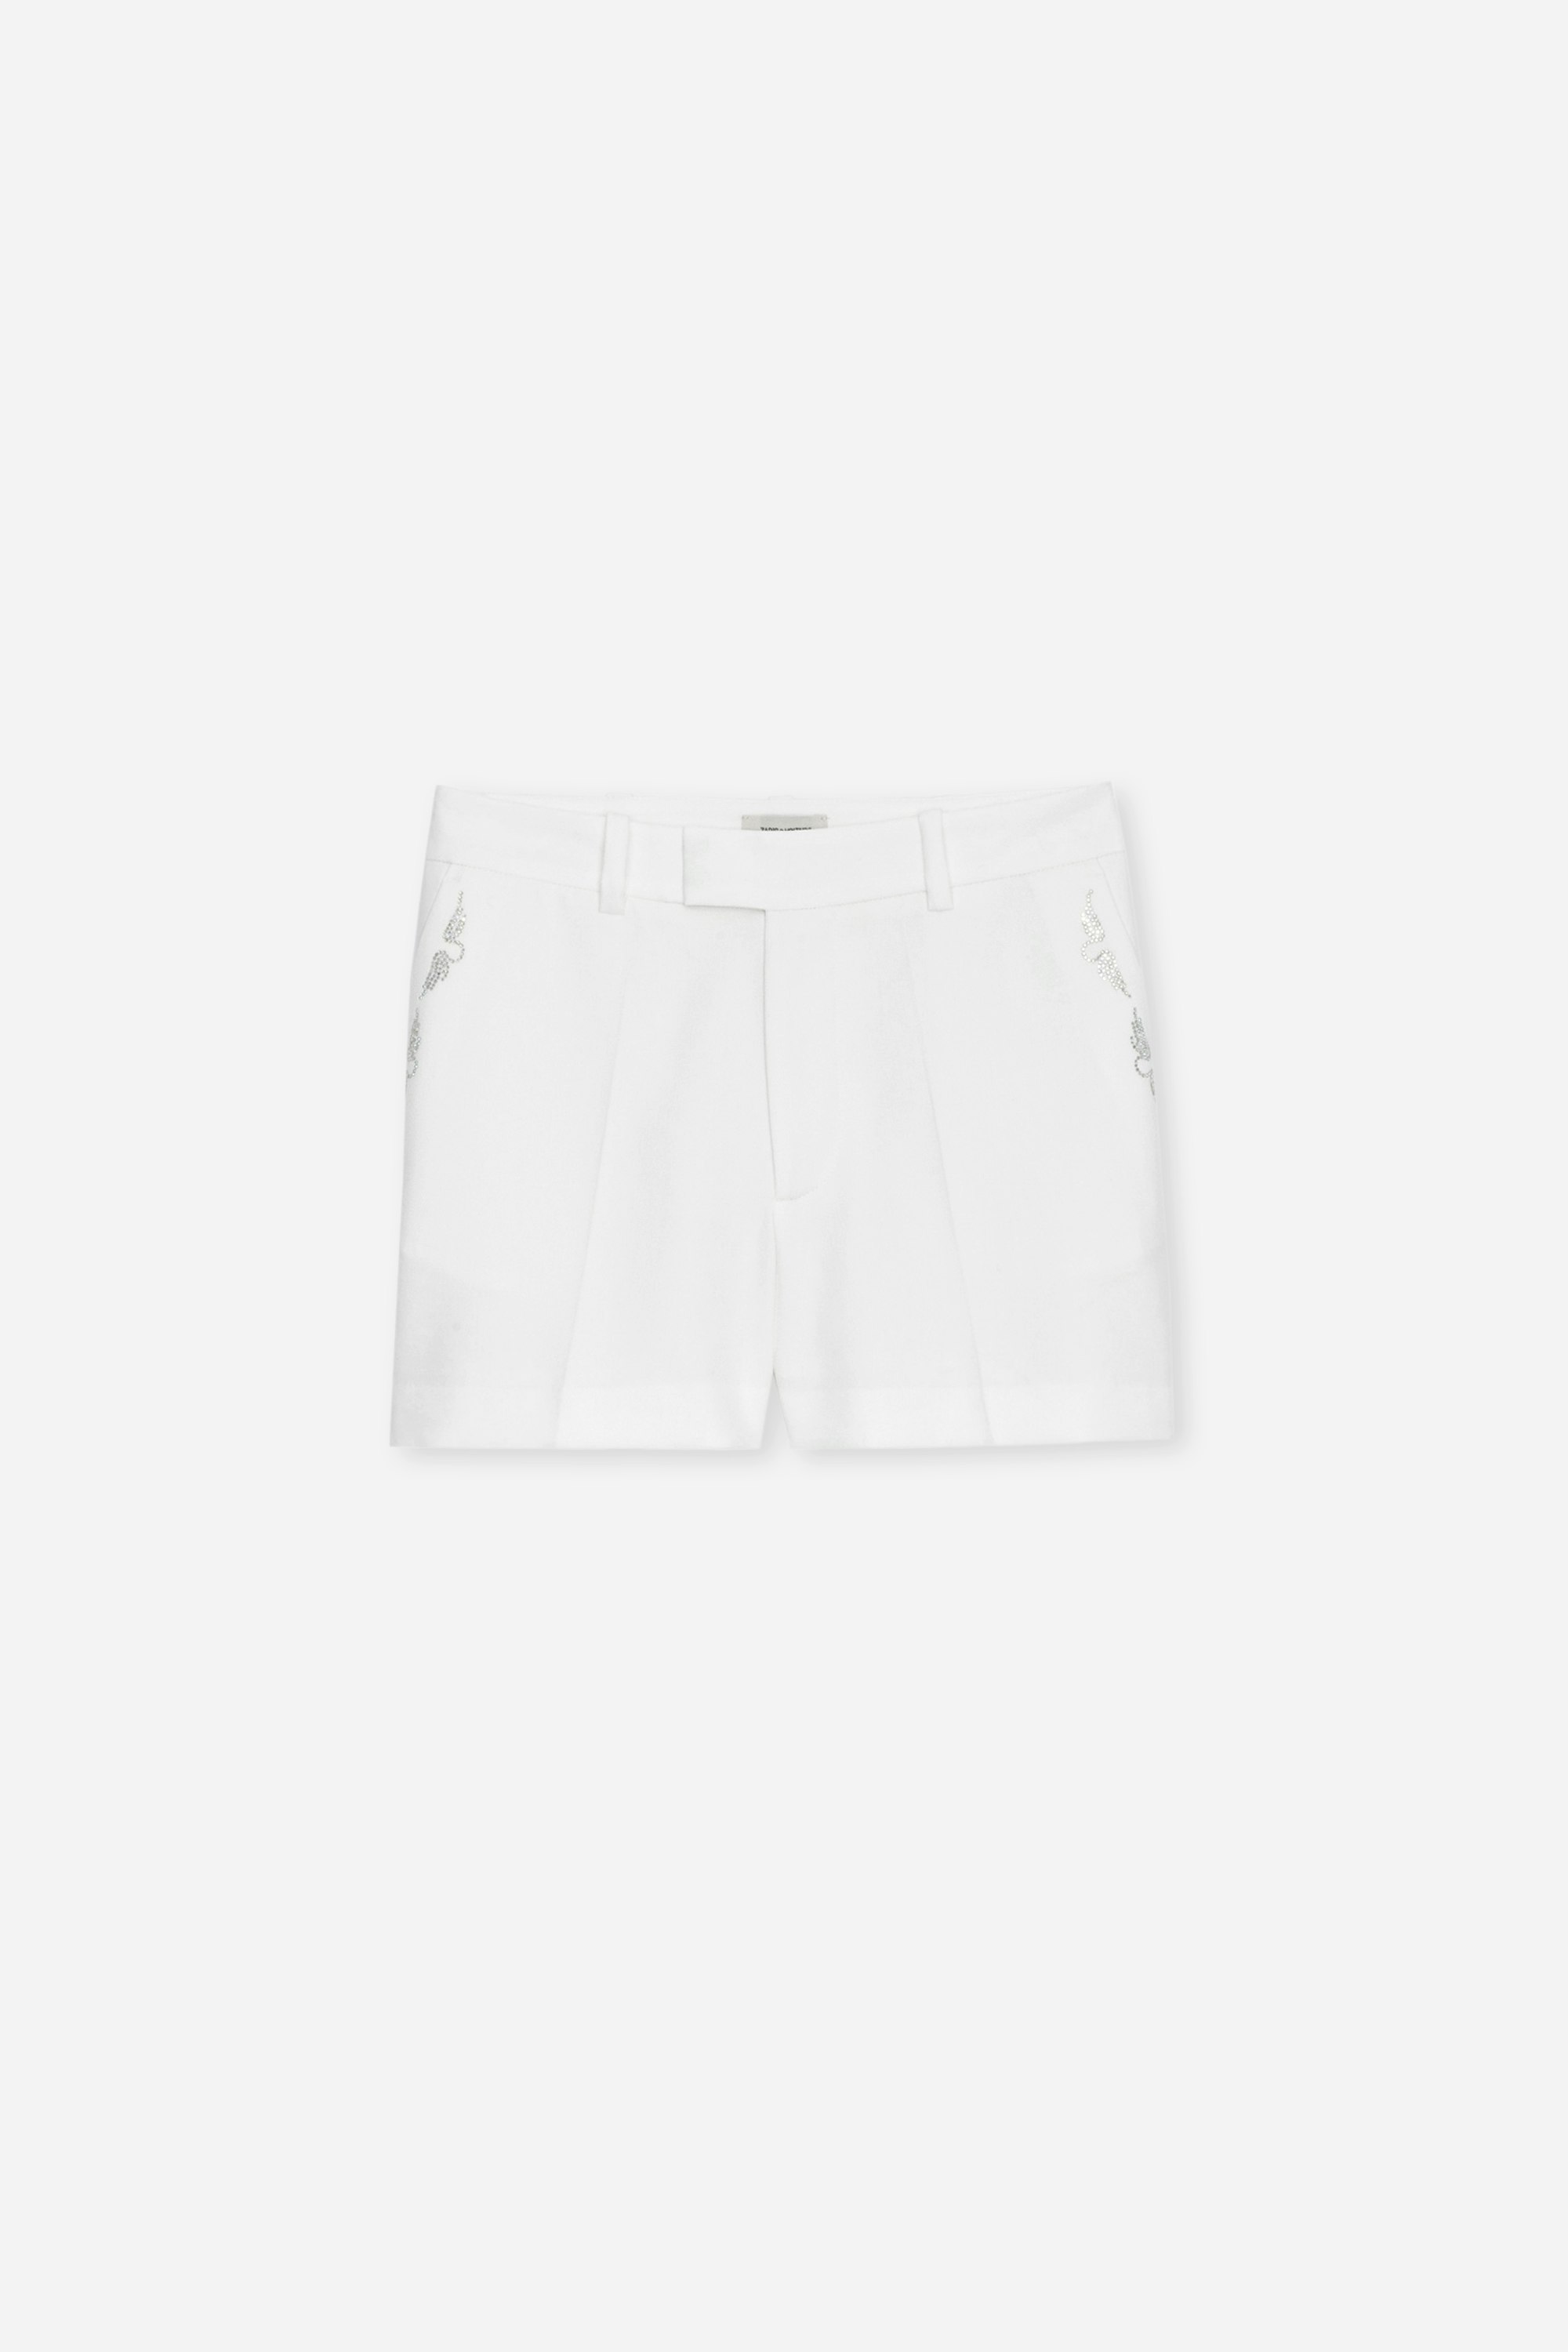 Short Please Strass - Short blanc à poches à rabat et passepoilée et ornée d'ailes en strass.